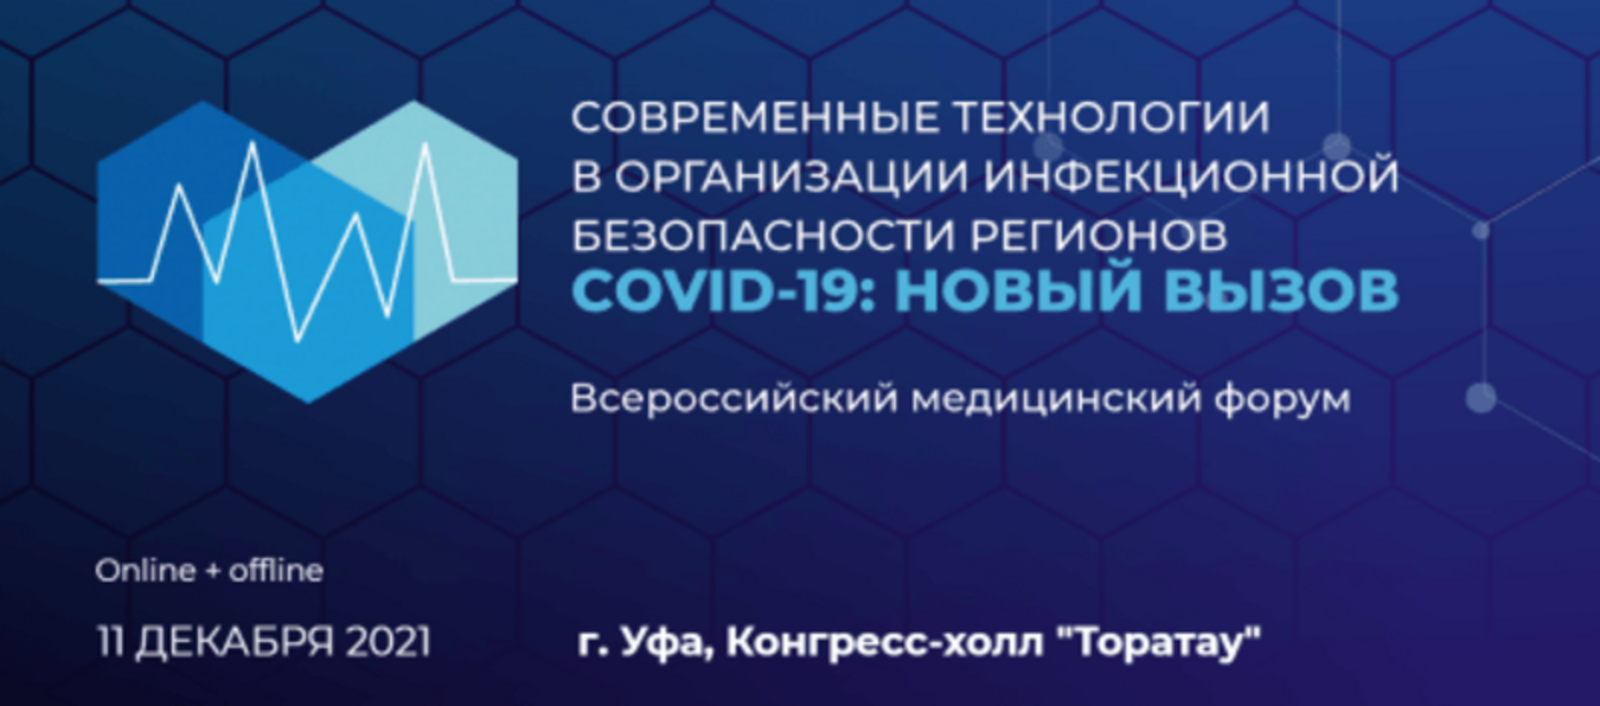 Столица Башкирии станет площадкой для проведения форума «COVID-19: новый вызов»